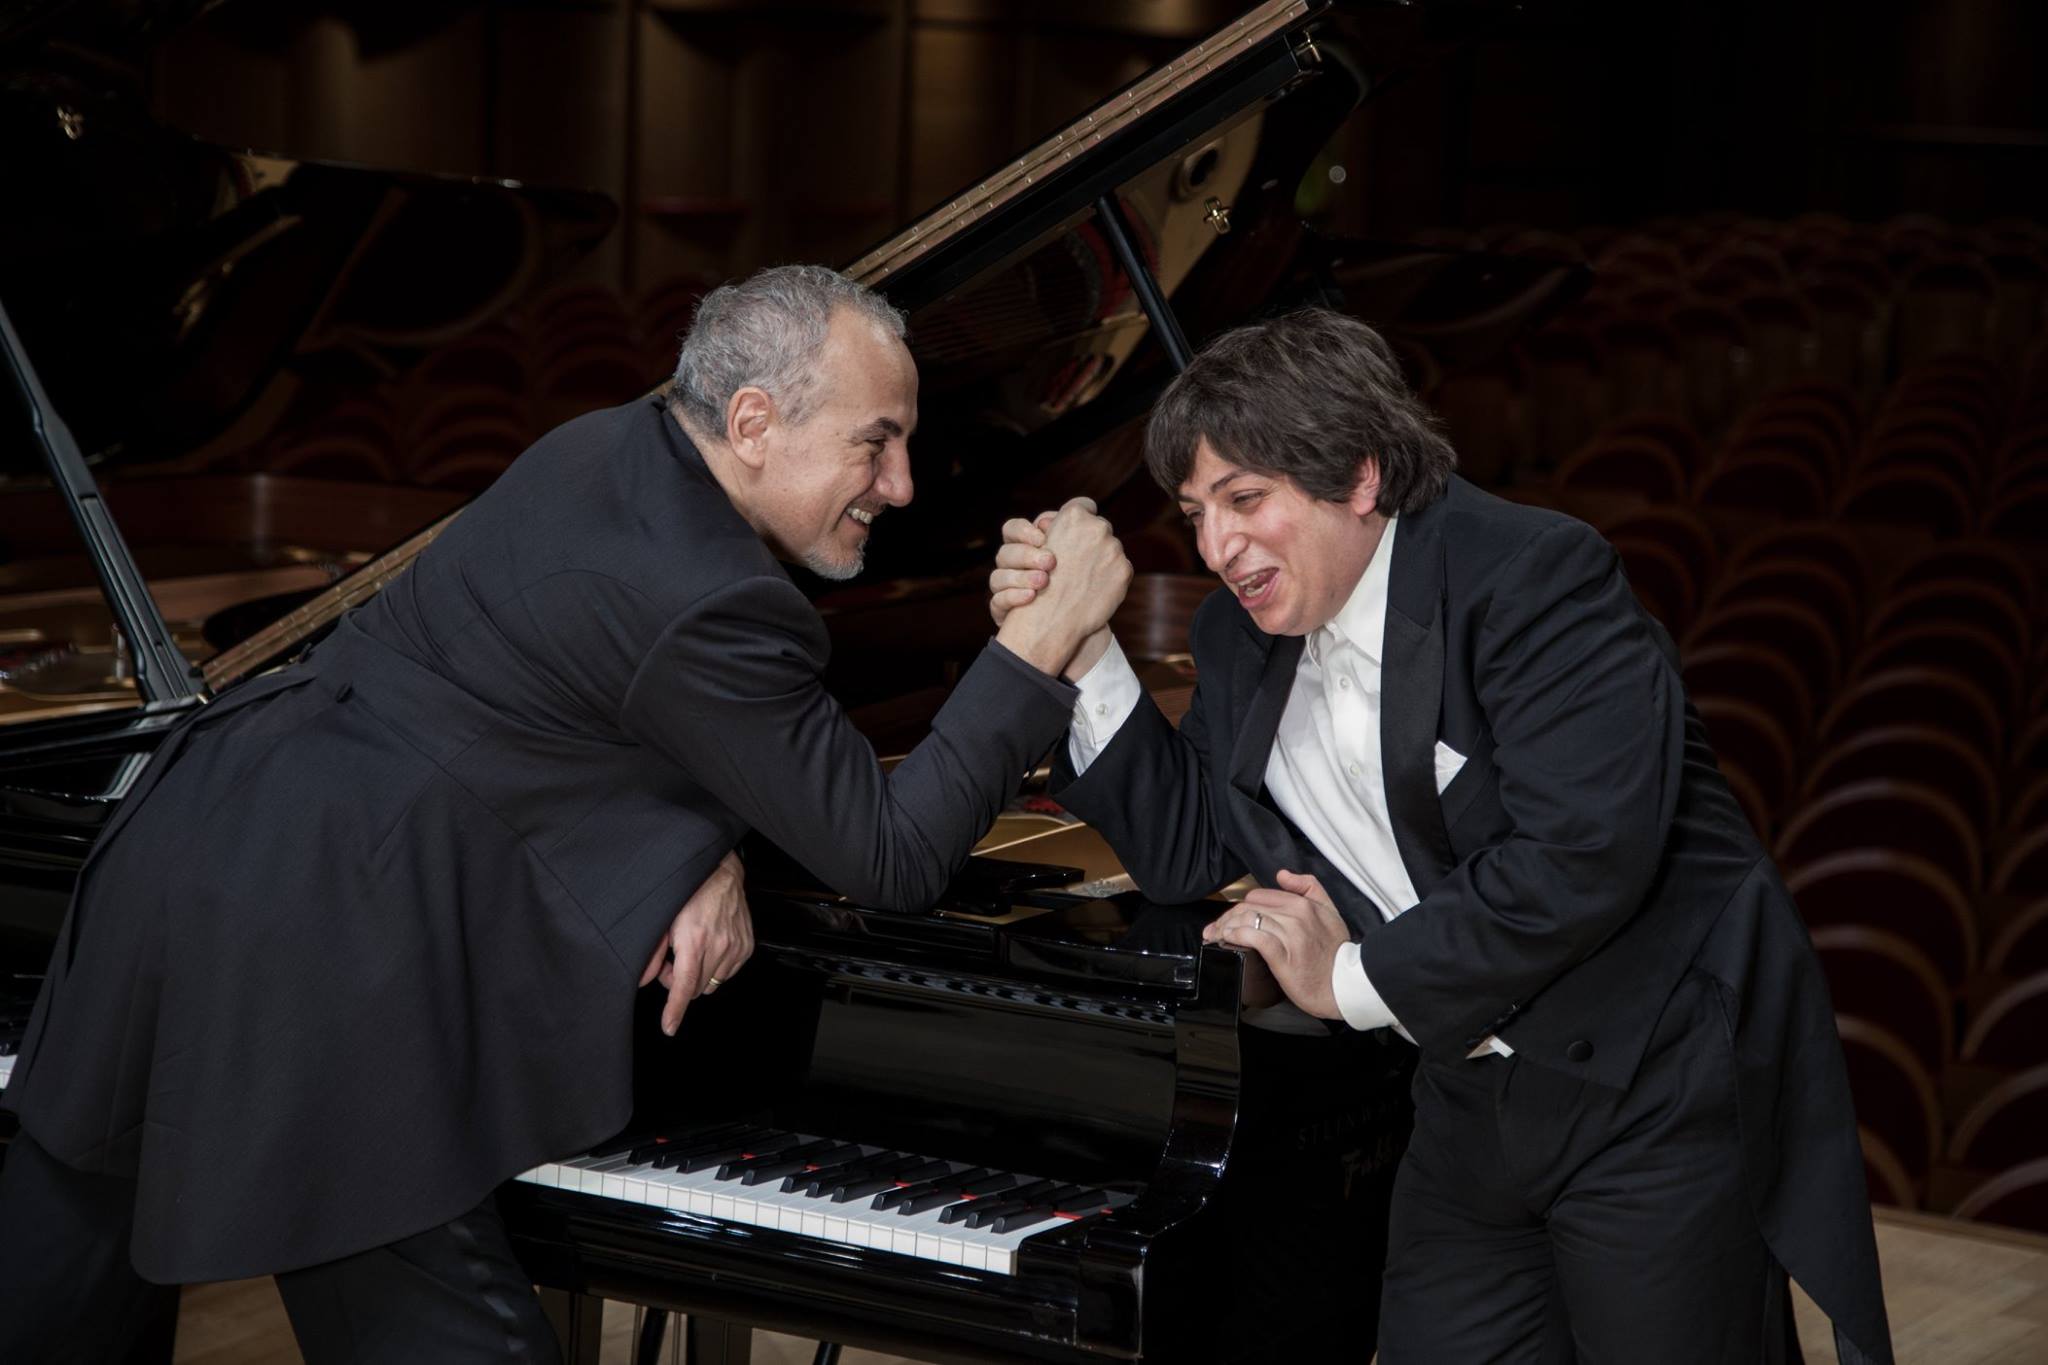 Scopri di più sull'articolo Teatro Verdi Gorizia – Bach is in the air giovedì 11 con Ramin Bahrami e Danilo Rea